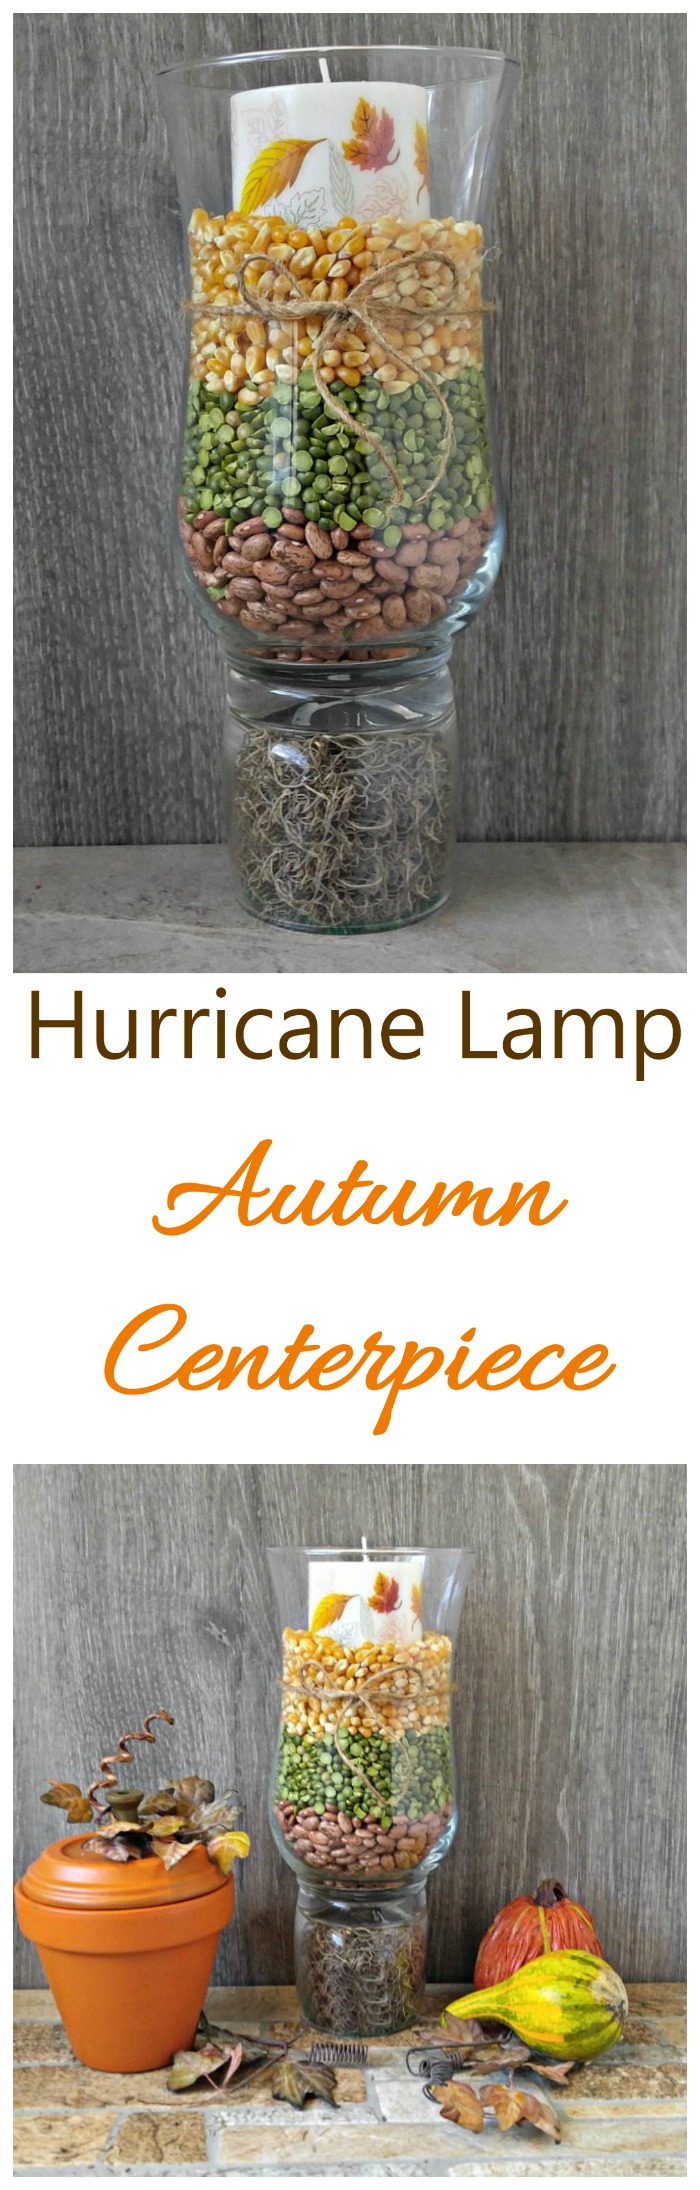 Осенний центральный элемент в виде лампы с ураганом - деревенский осенний декор стола